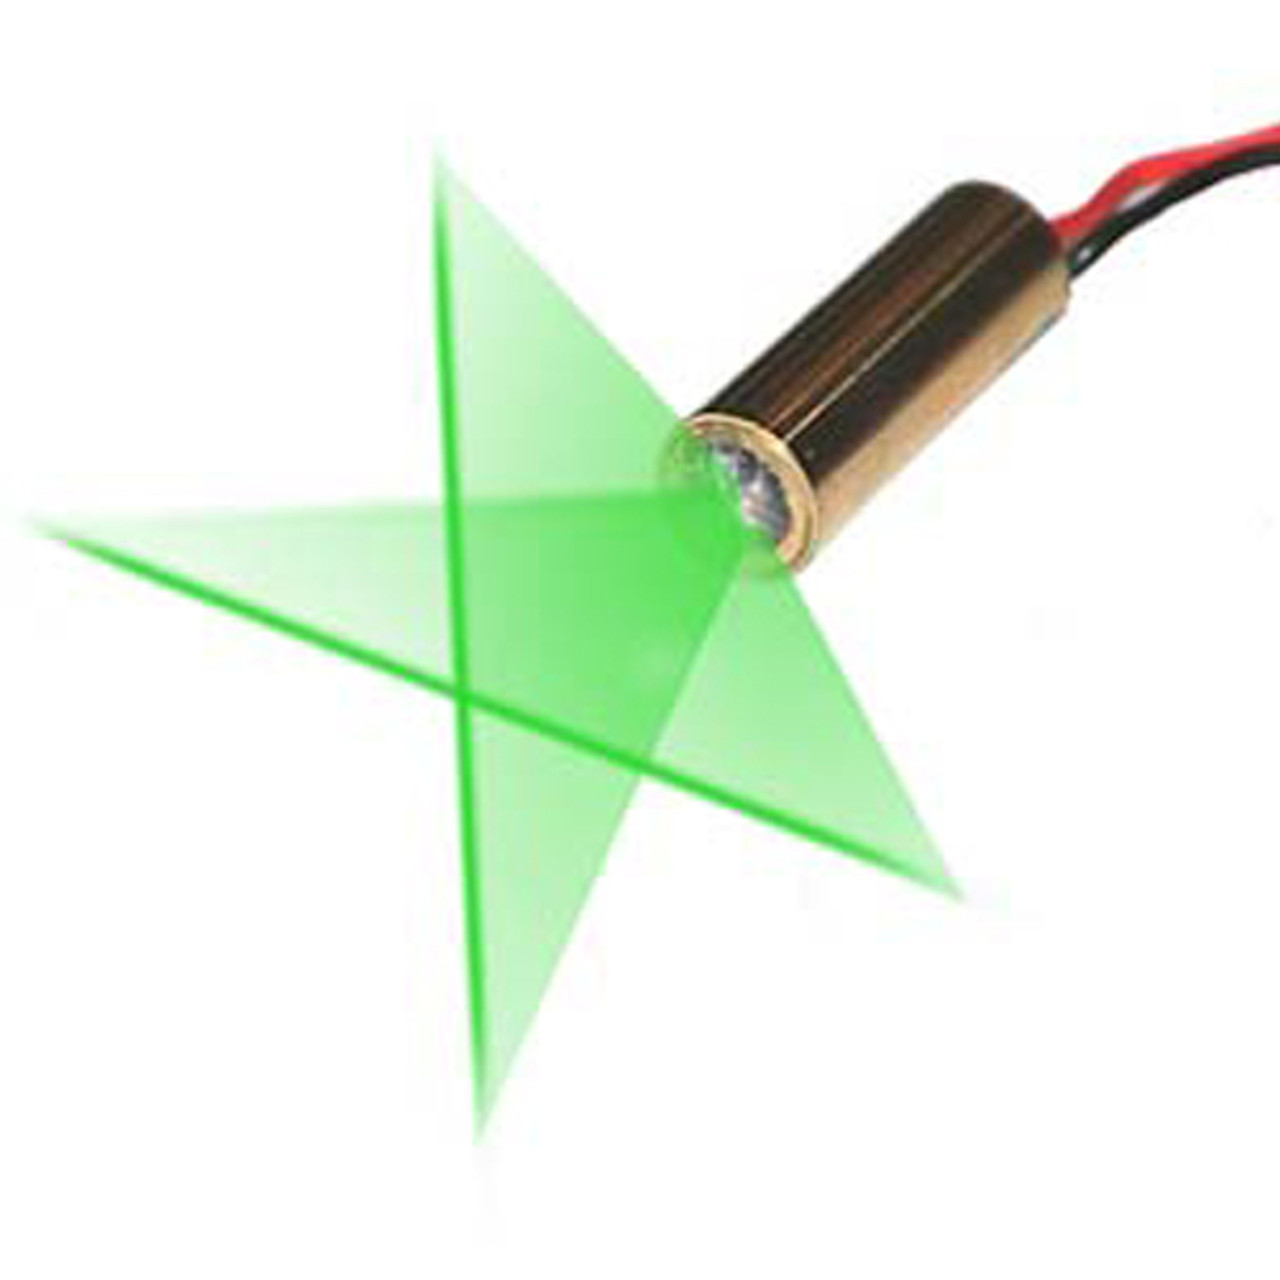 Cross Line Laser - Green Cross Laser Module, VLM-520-29 LPT